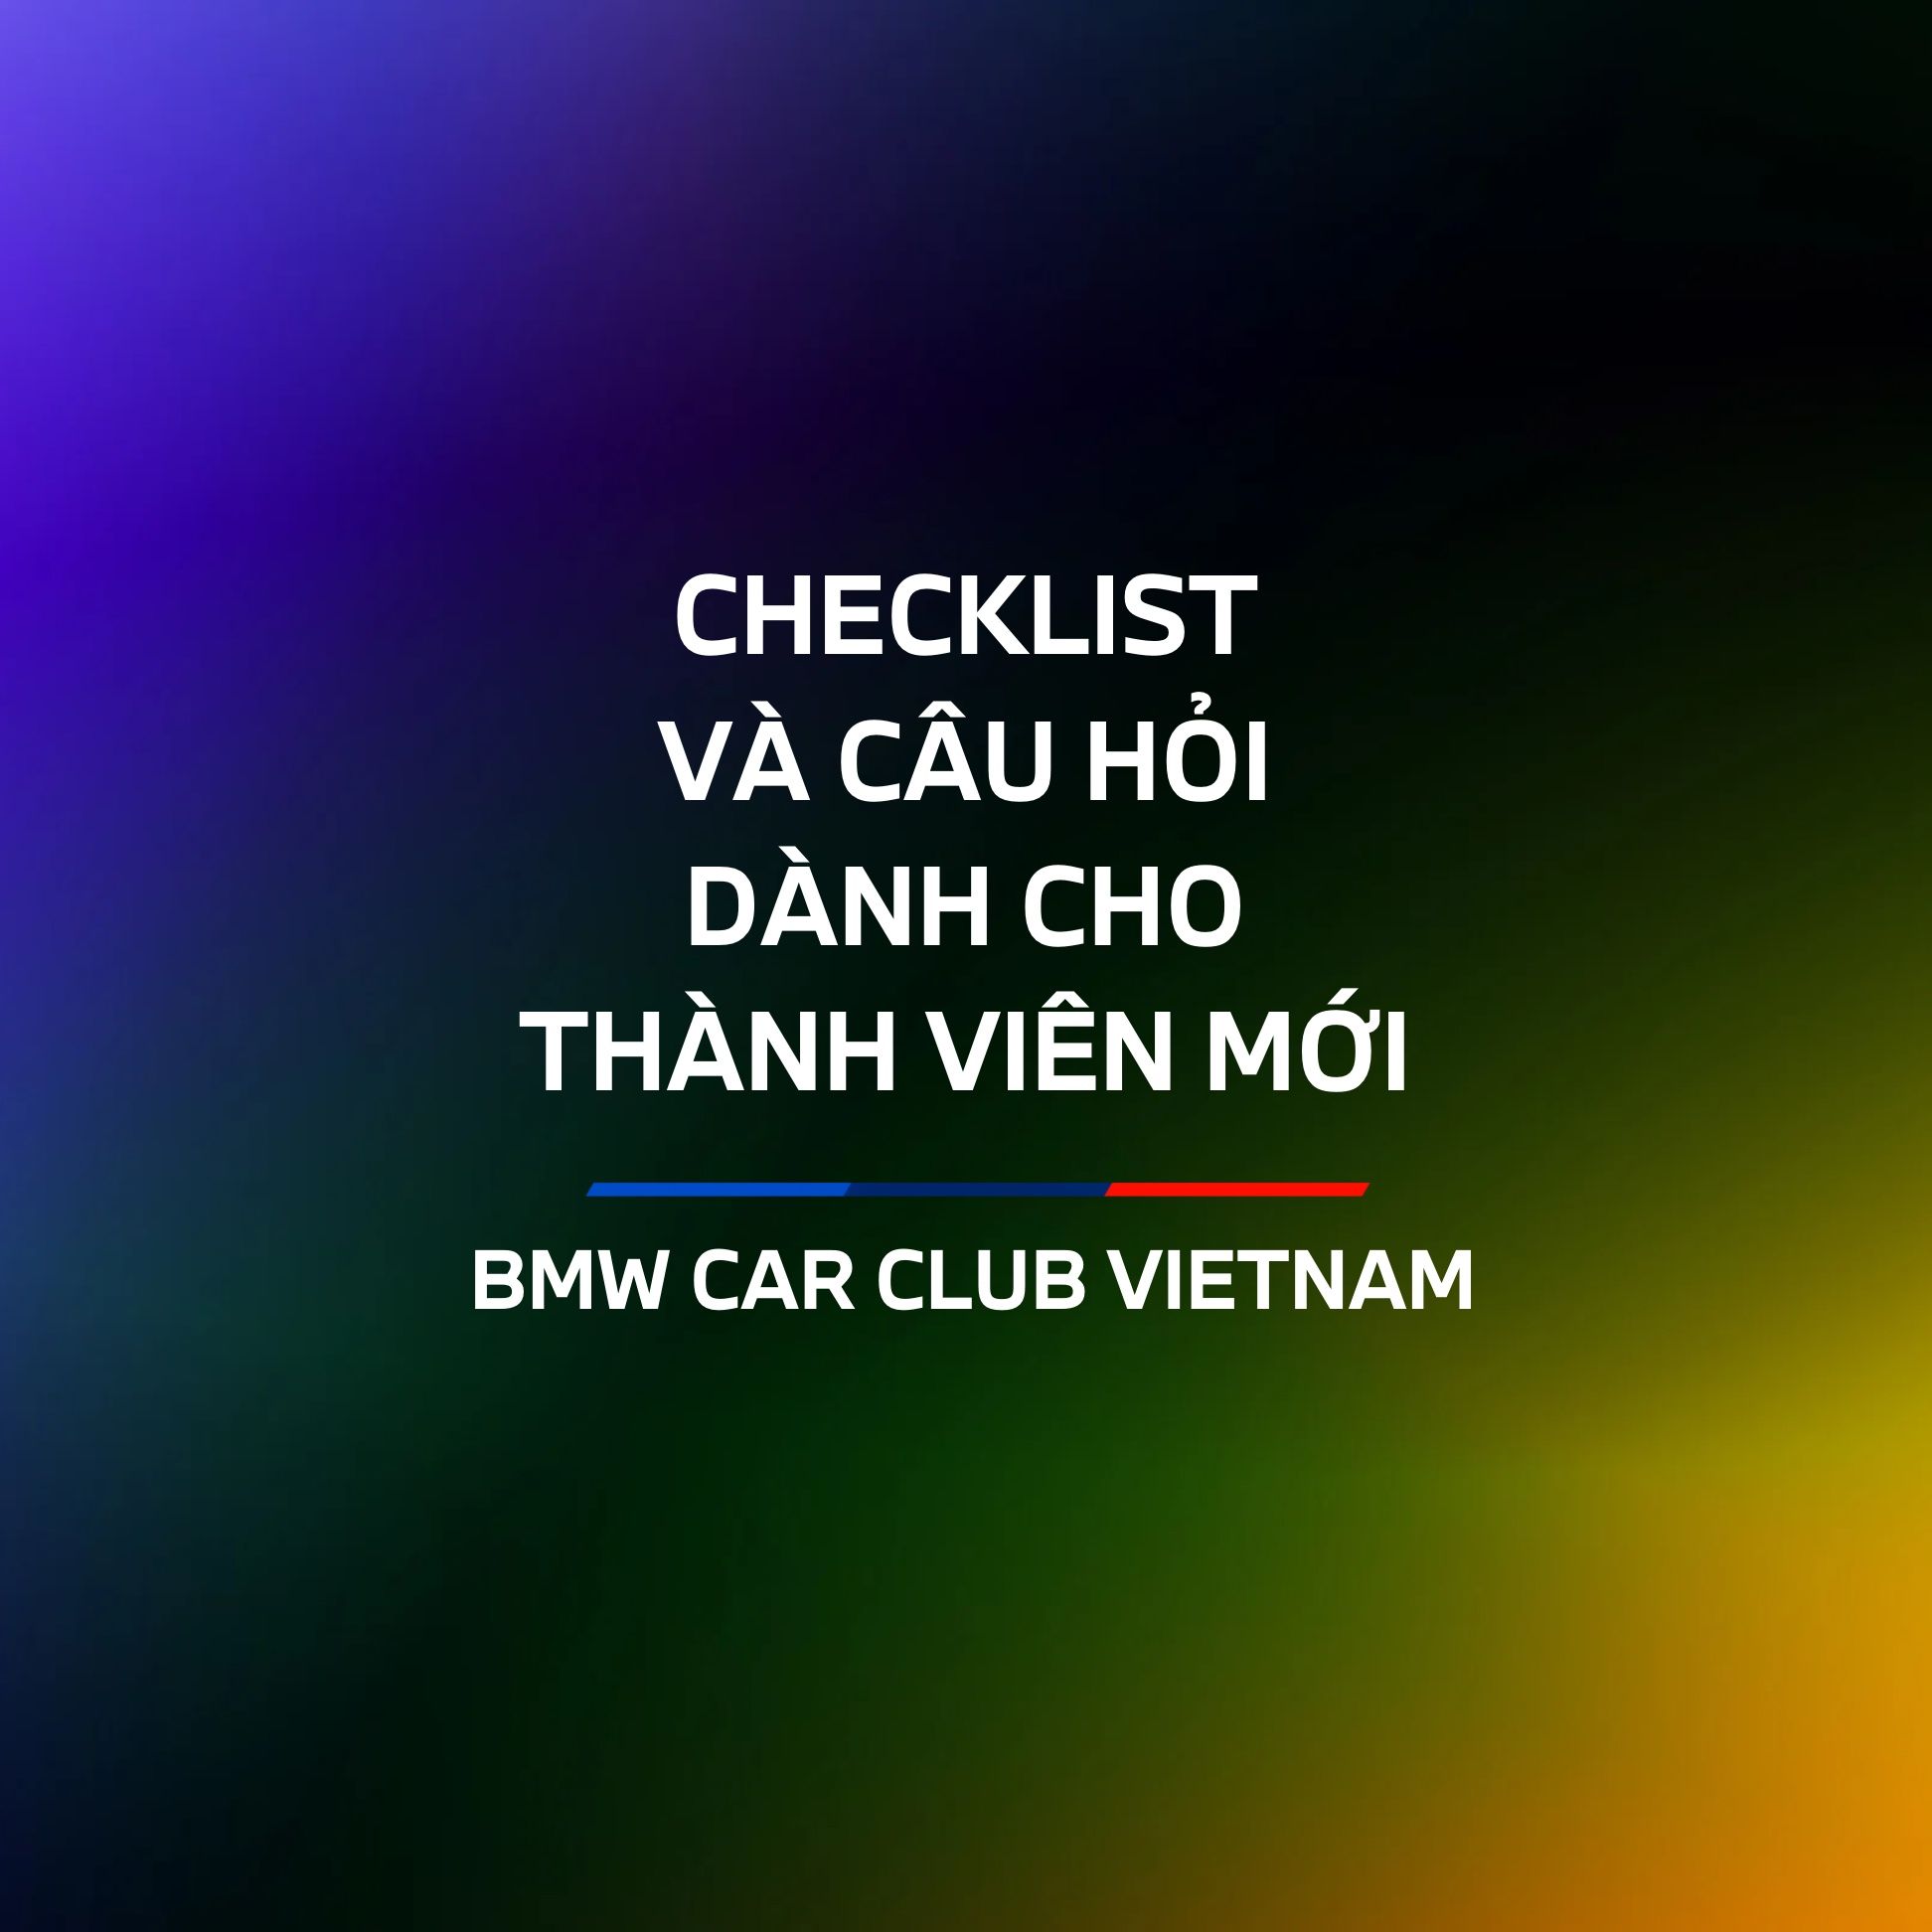 Checklist & Câu hỏi thường gặp dành cho thành viên mới của BMW Car Club Vietnam